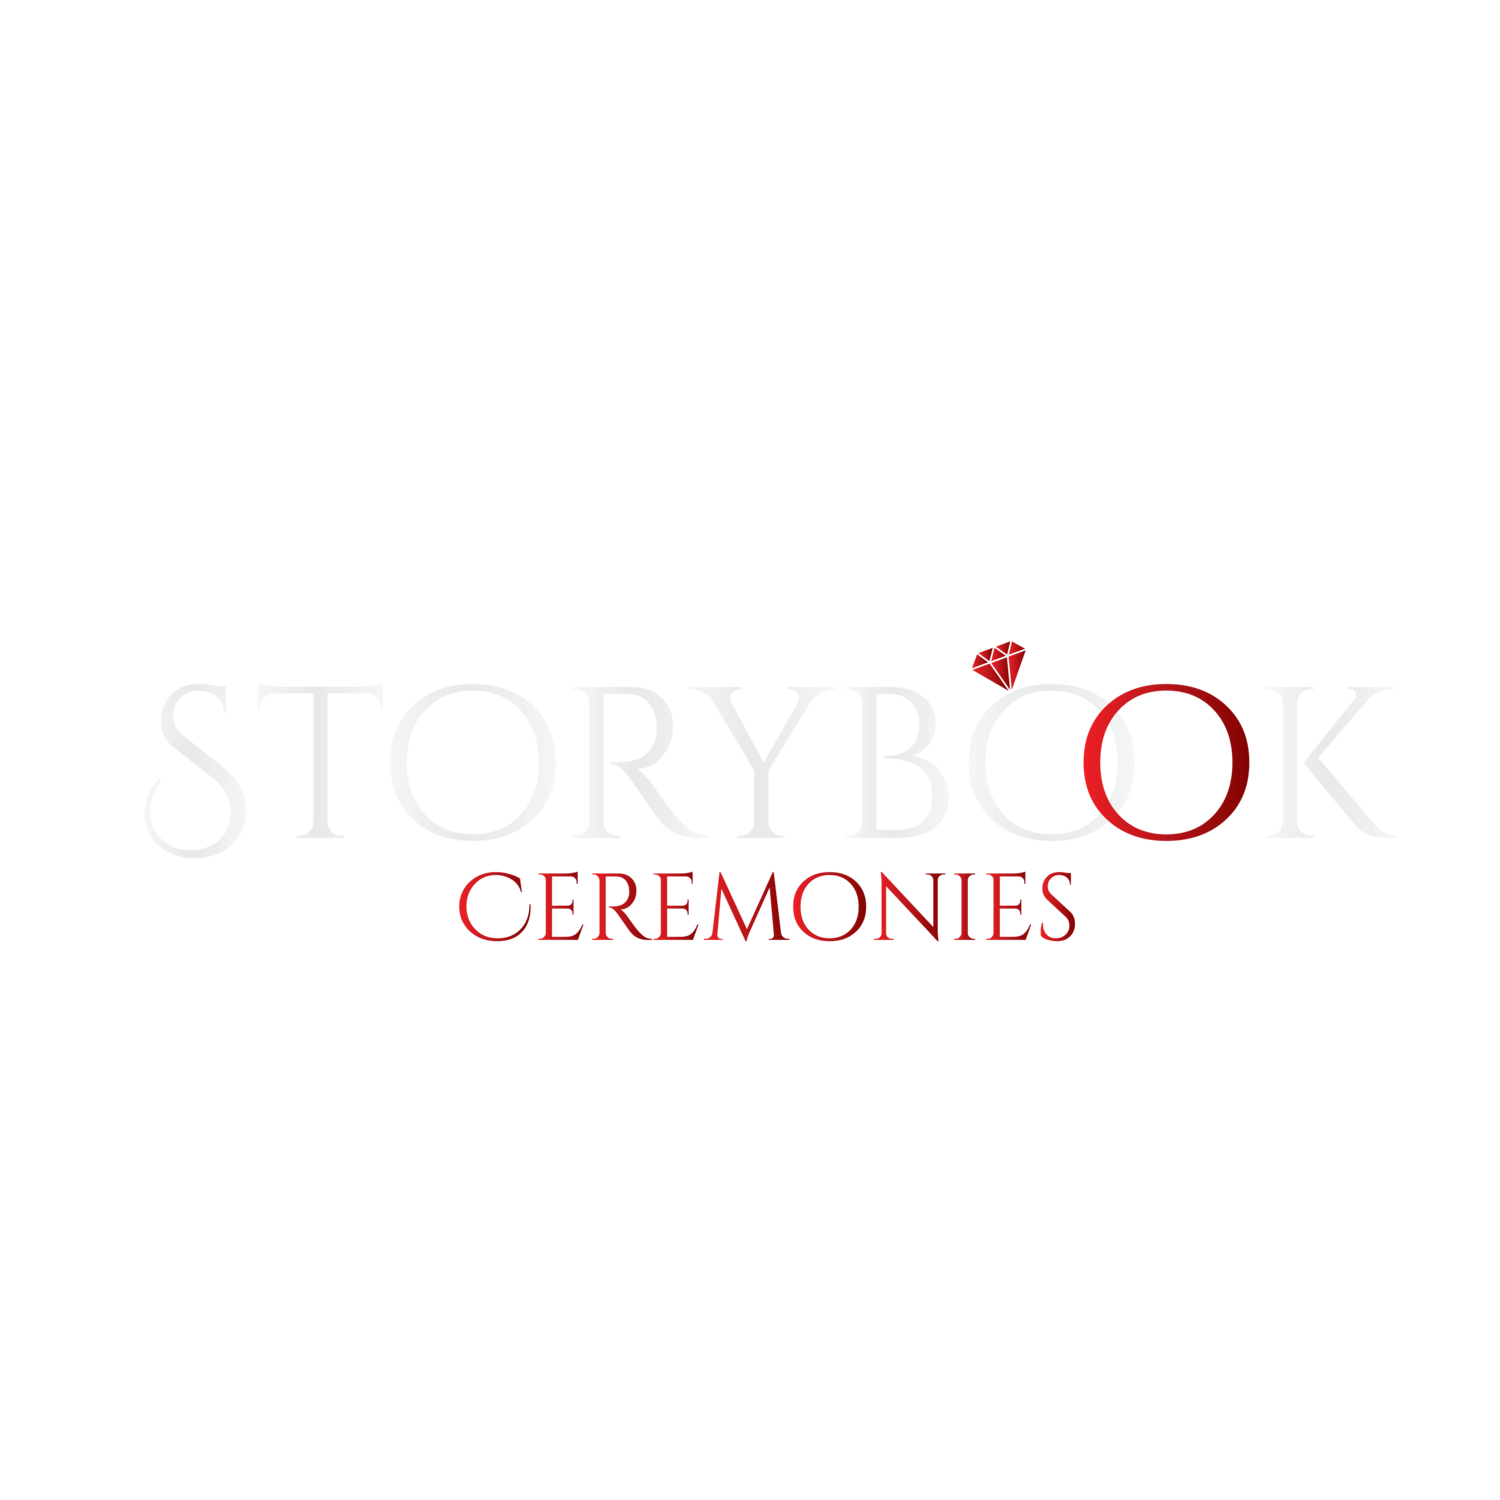 Storybook Ceremonies